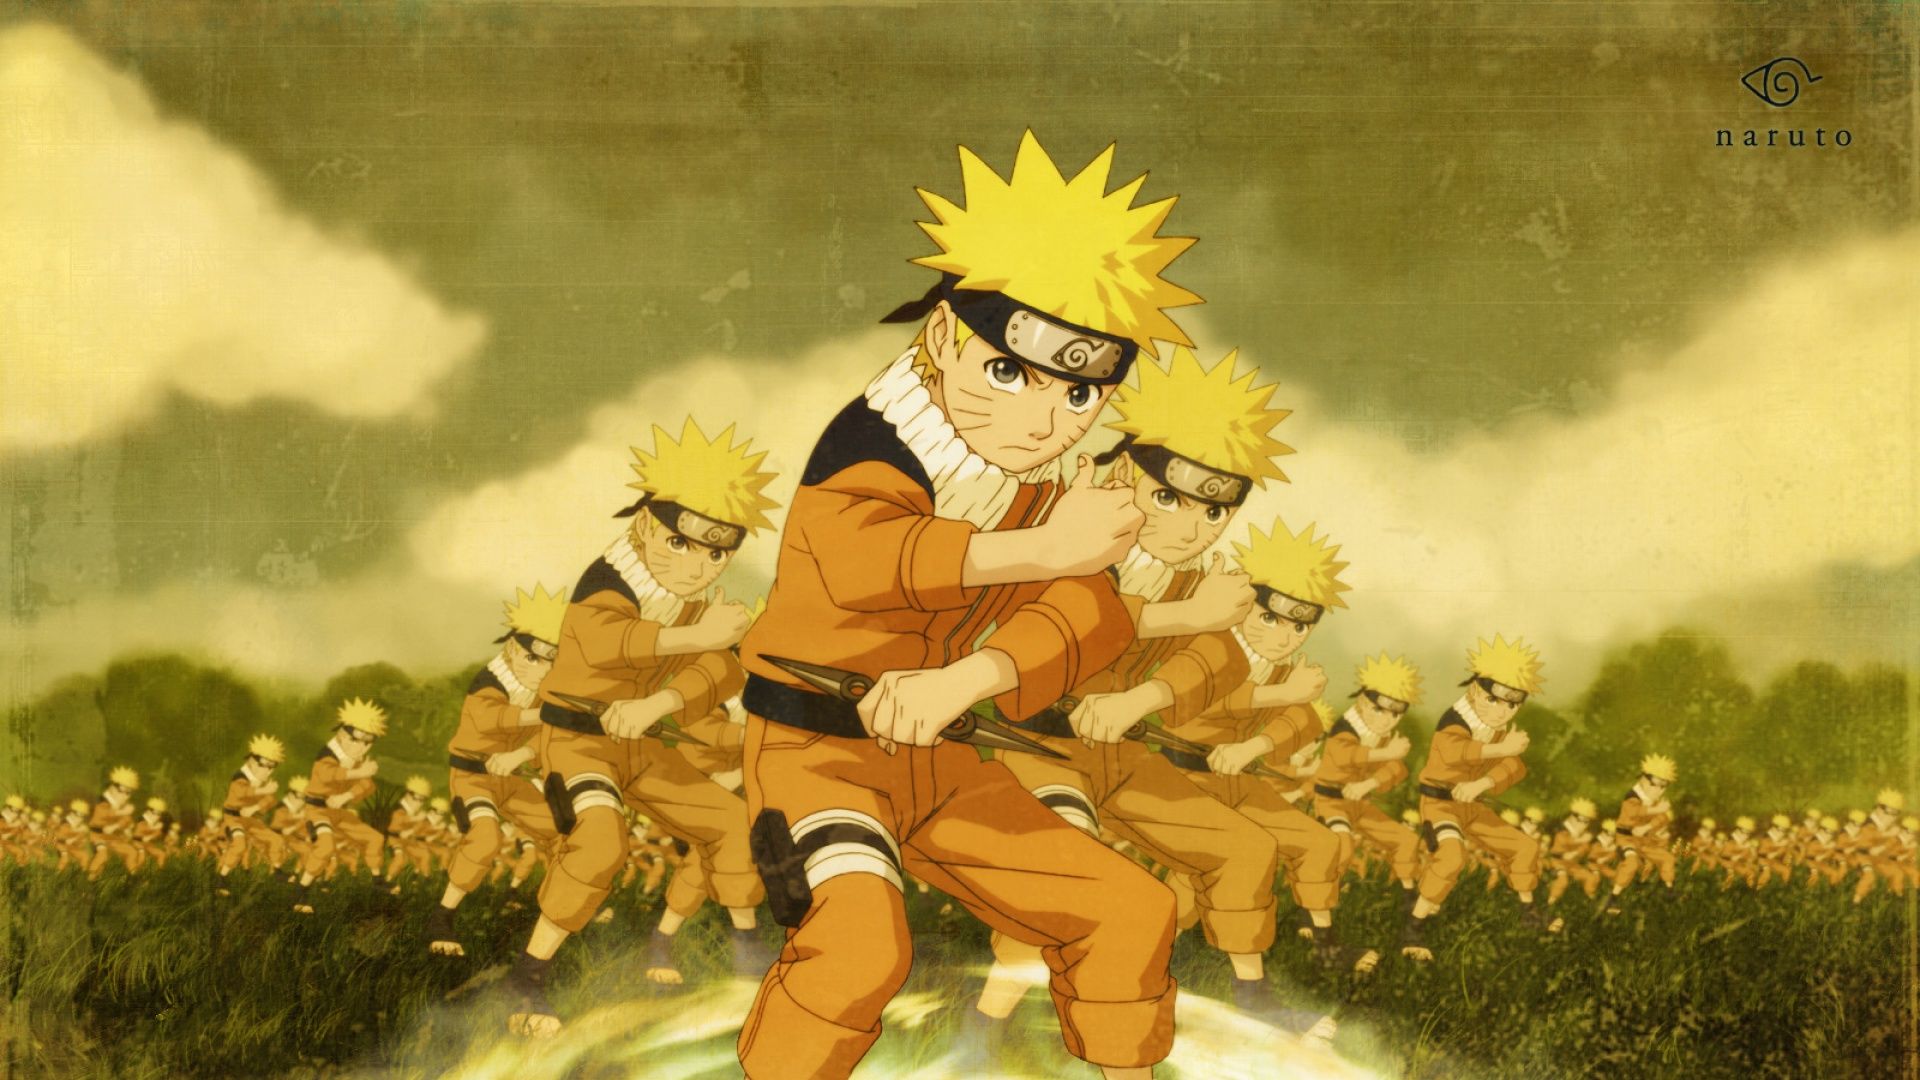 Anime 1920x1080 artwork Naruto Shippuden anime Uzumaki Naruto